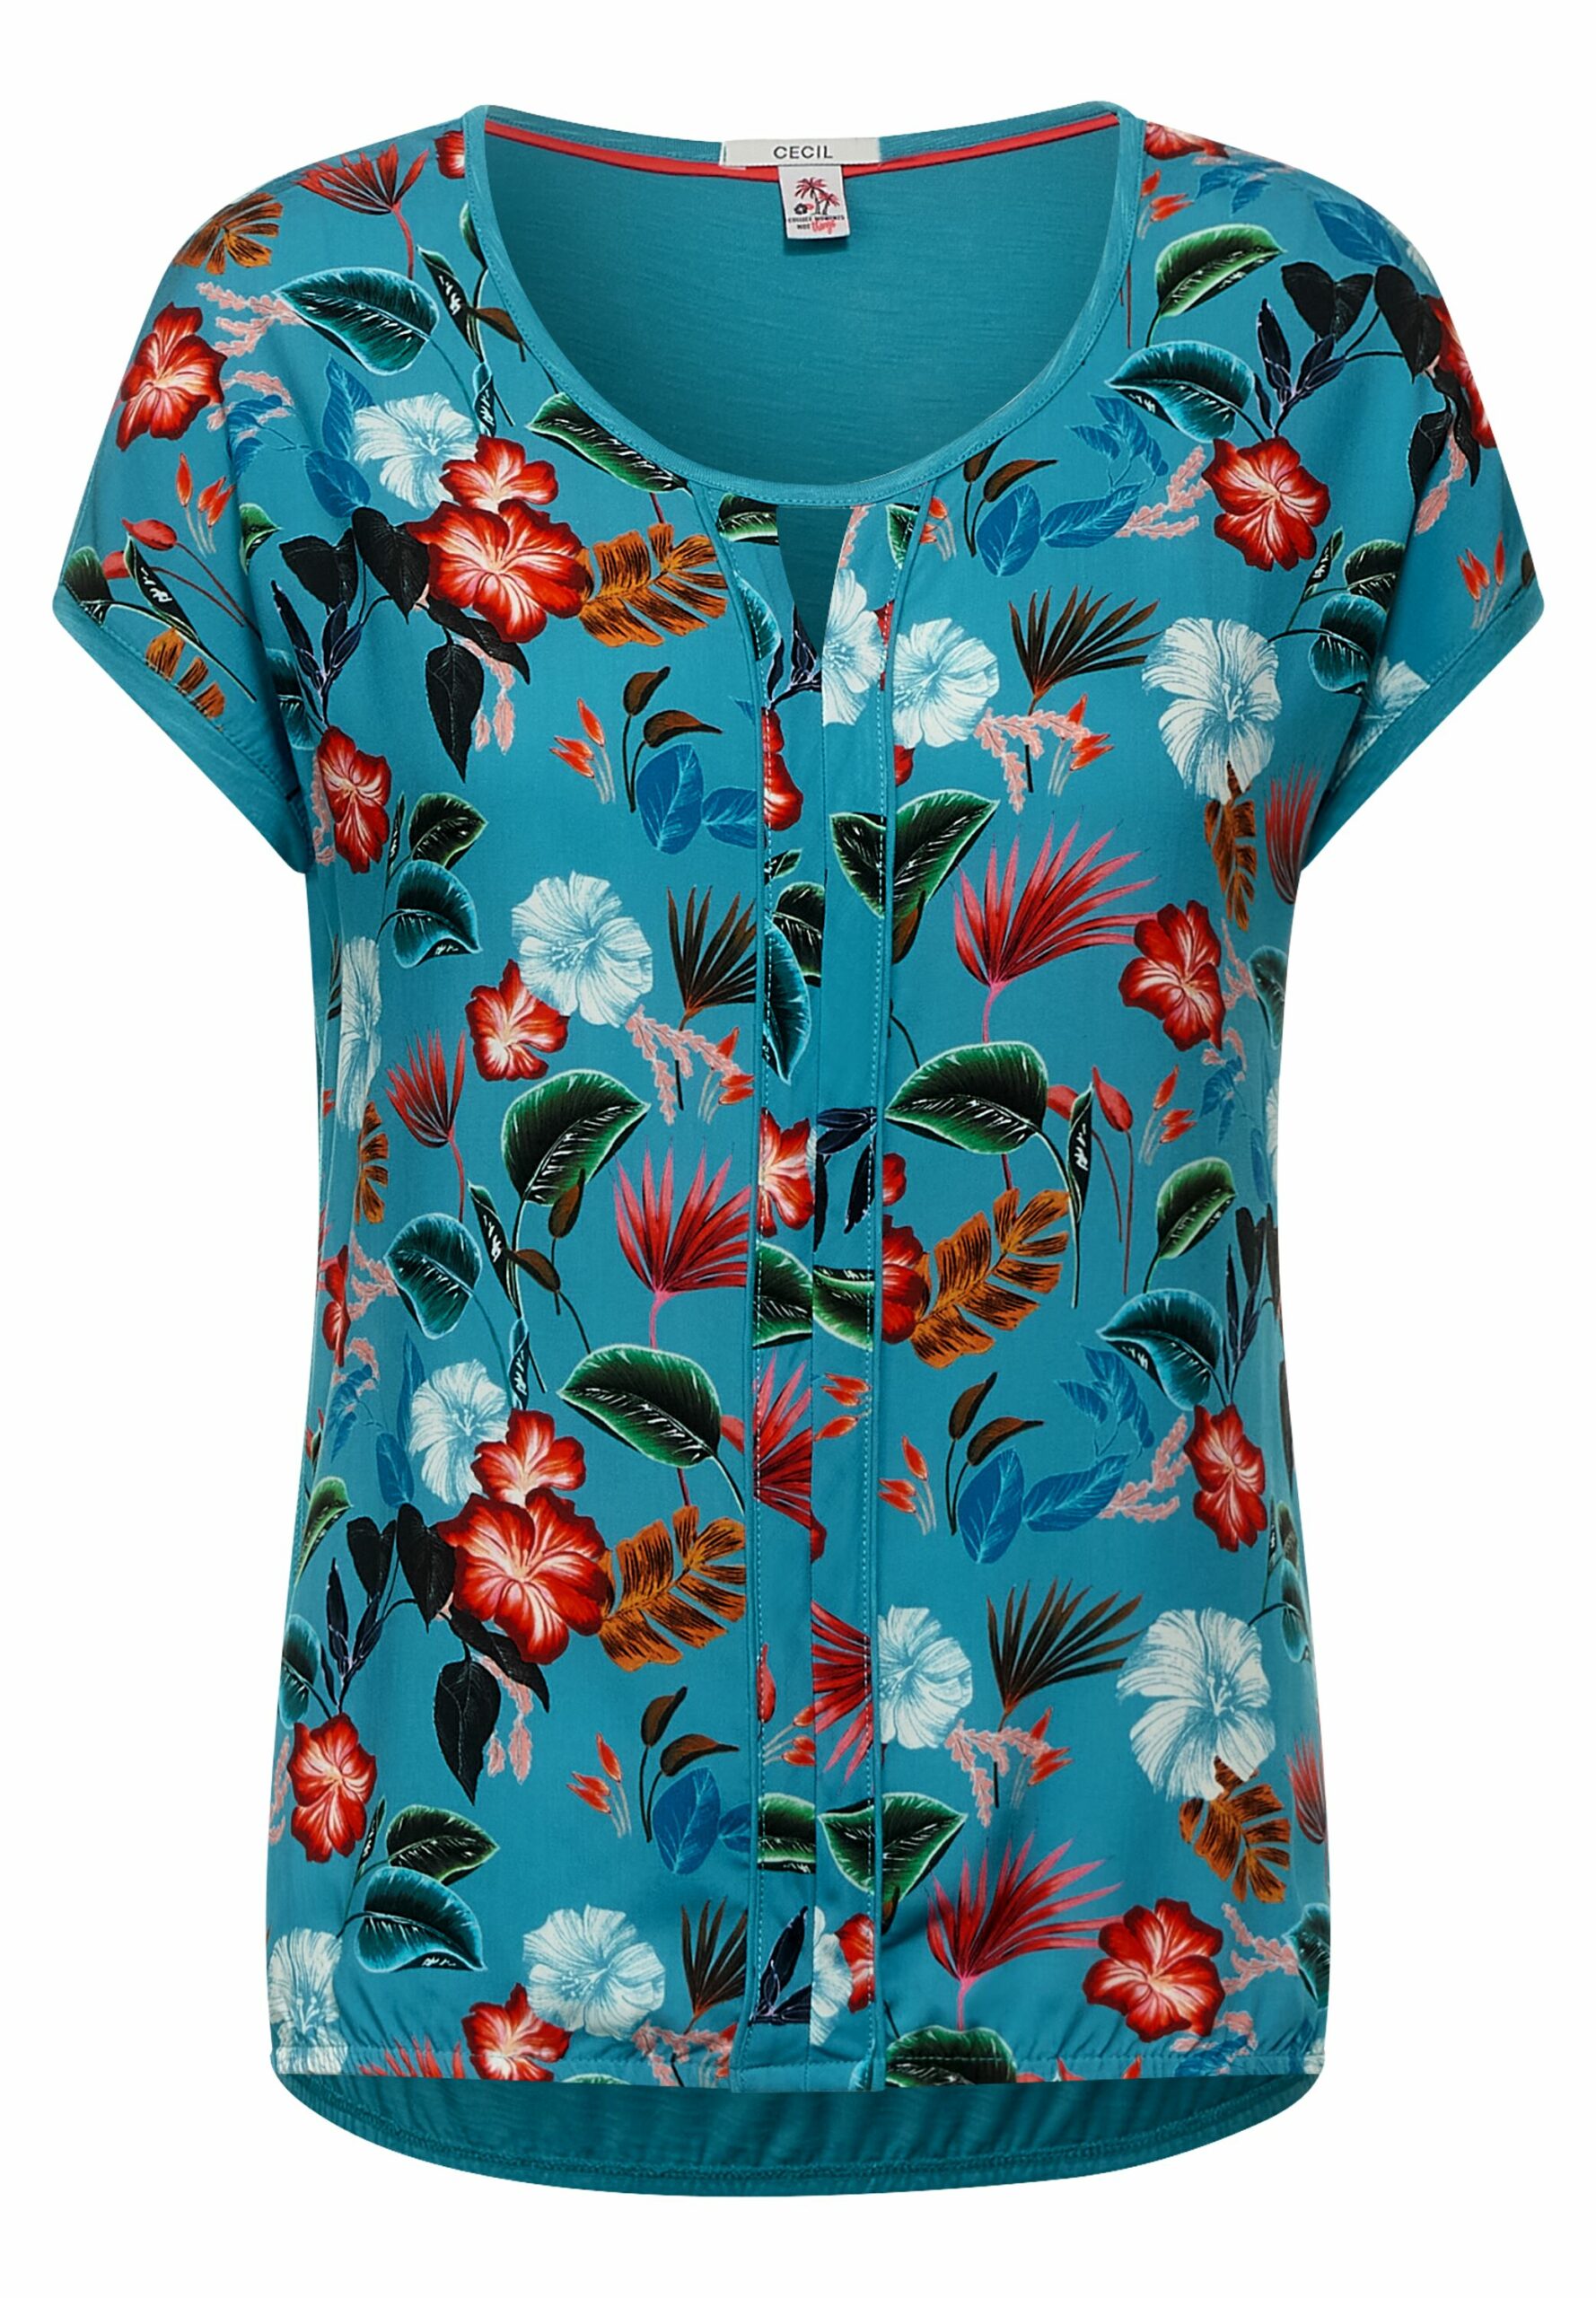 CECIL - T-Shirt mit Blumen Print - Modehaus Fahr Onlineshop